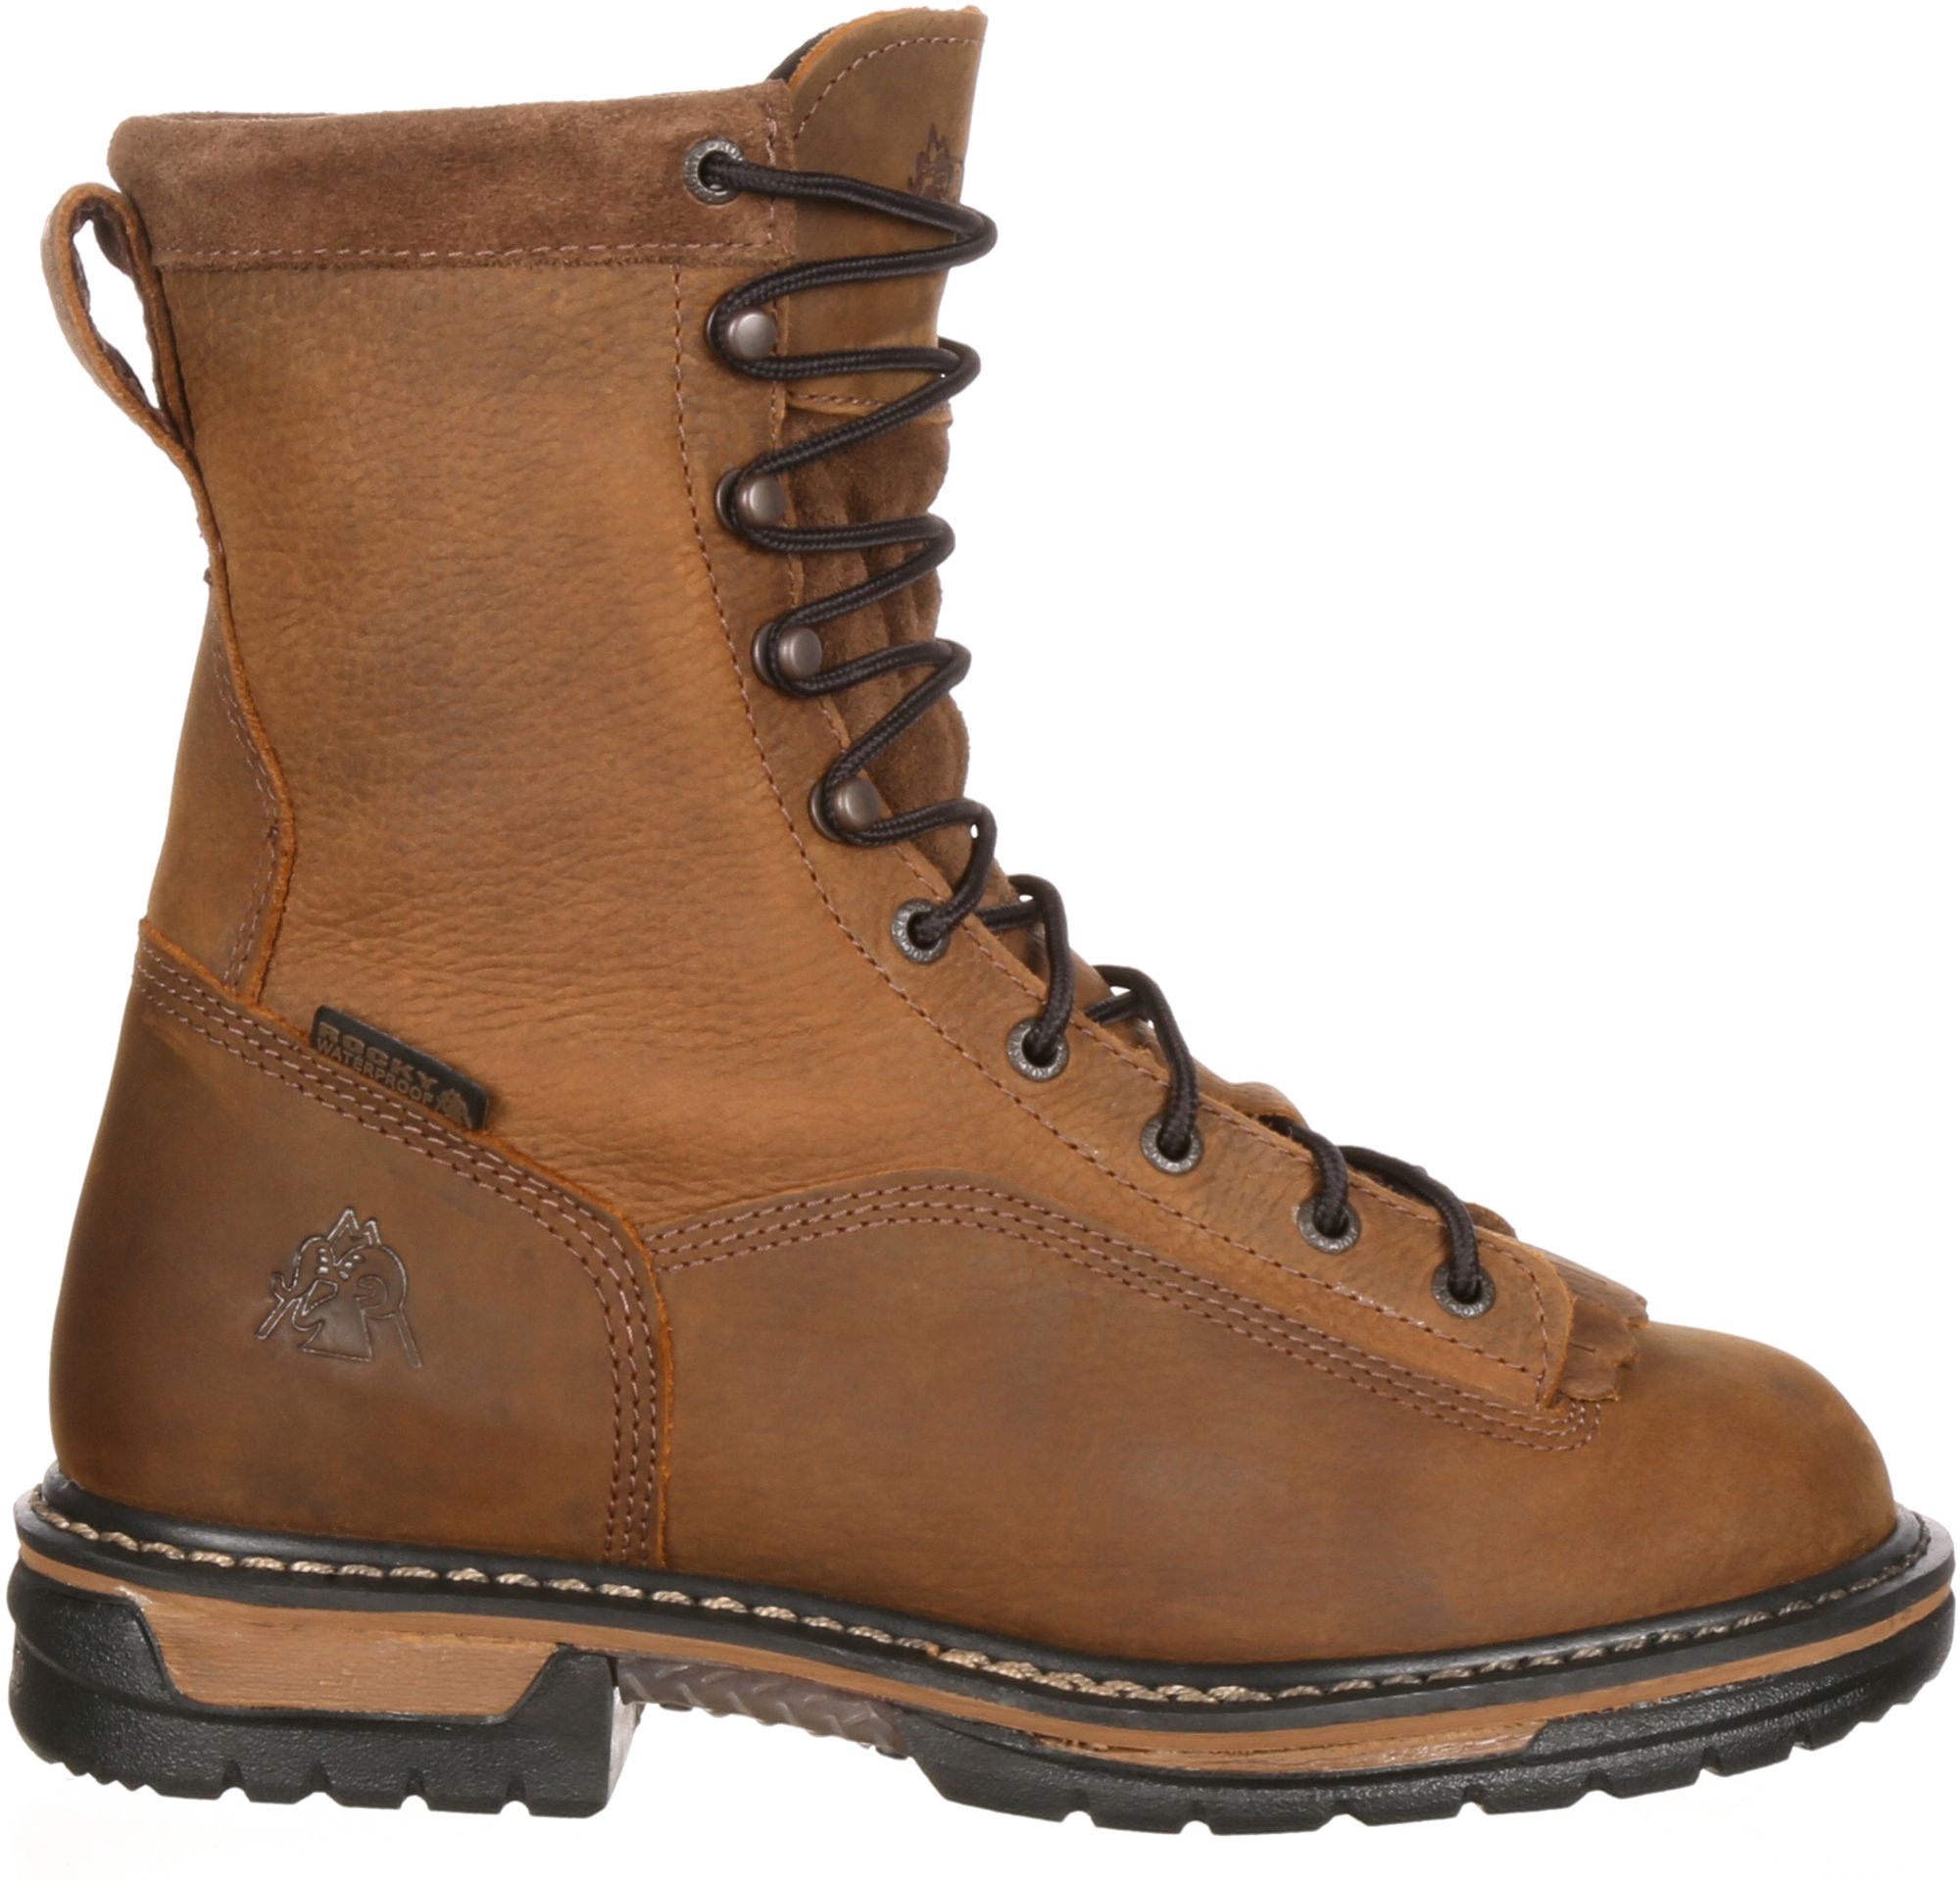 rocky ironclad steel toe waterproof work boots